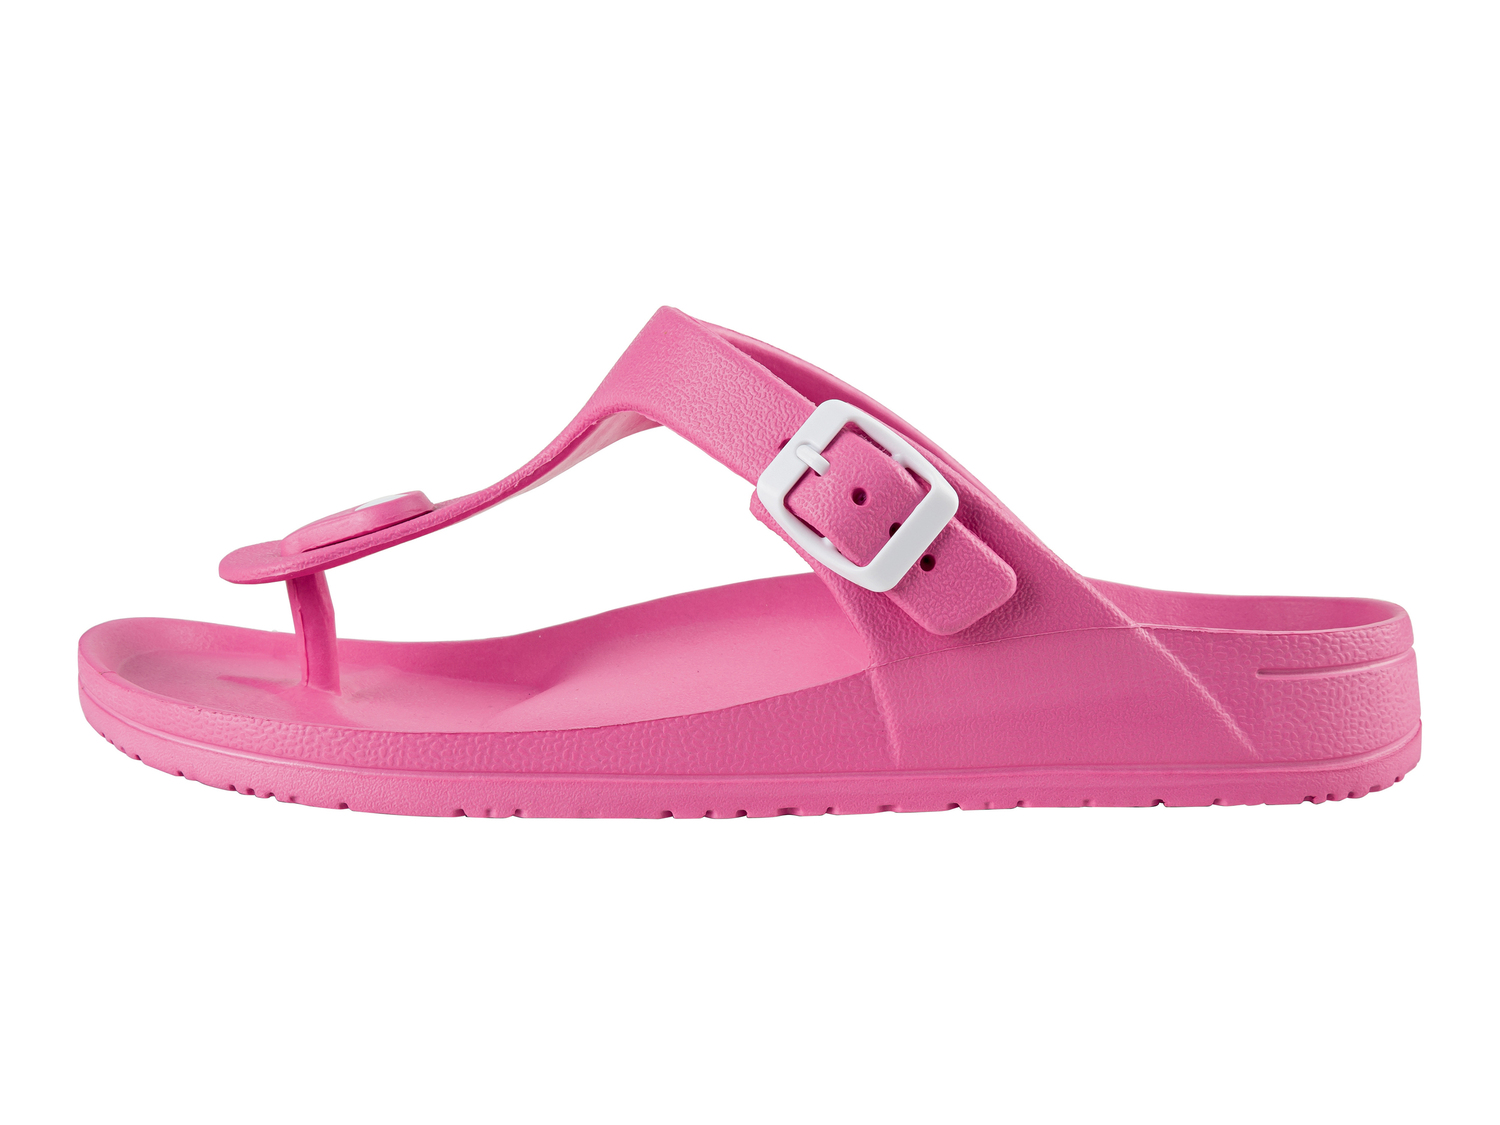 Ciabatte o sandali da donna Esmara, prezzo 4.99 € 
Misure: 36-40
Taglie disponibili

Caratteristiche ...